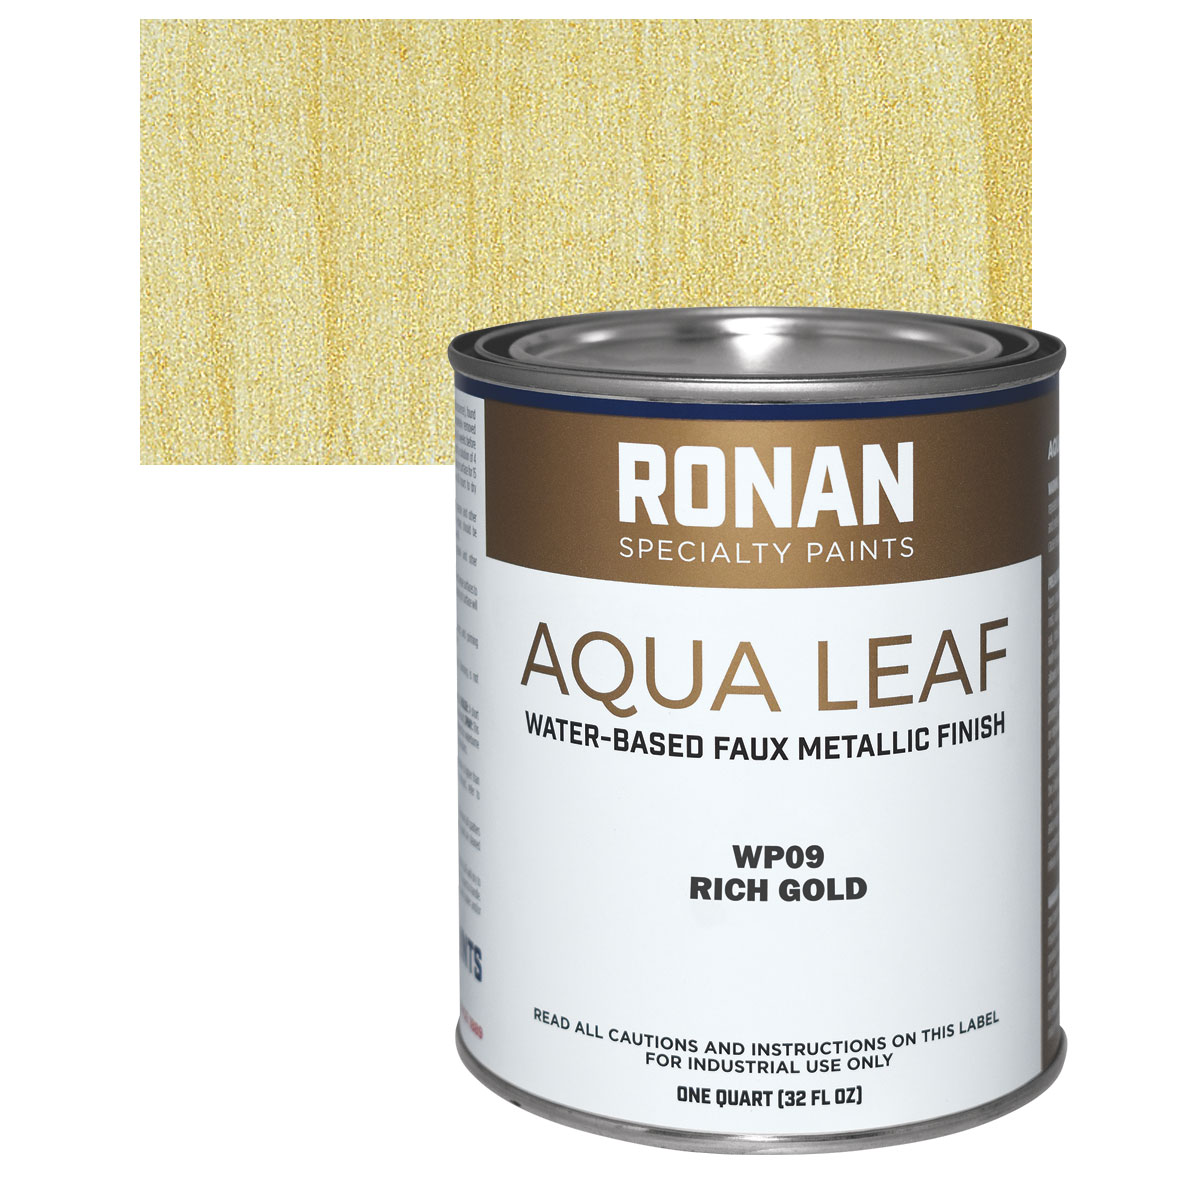 Buy Ronan Aqua Leaf Metallic Paint for less